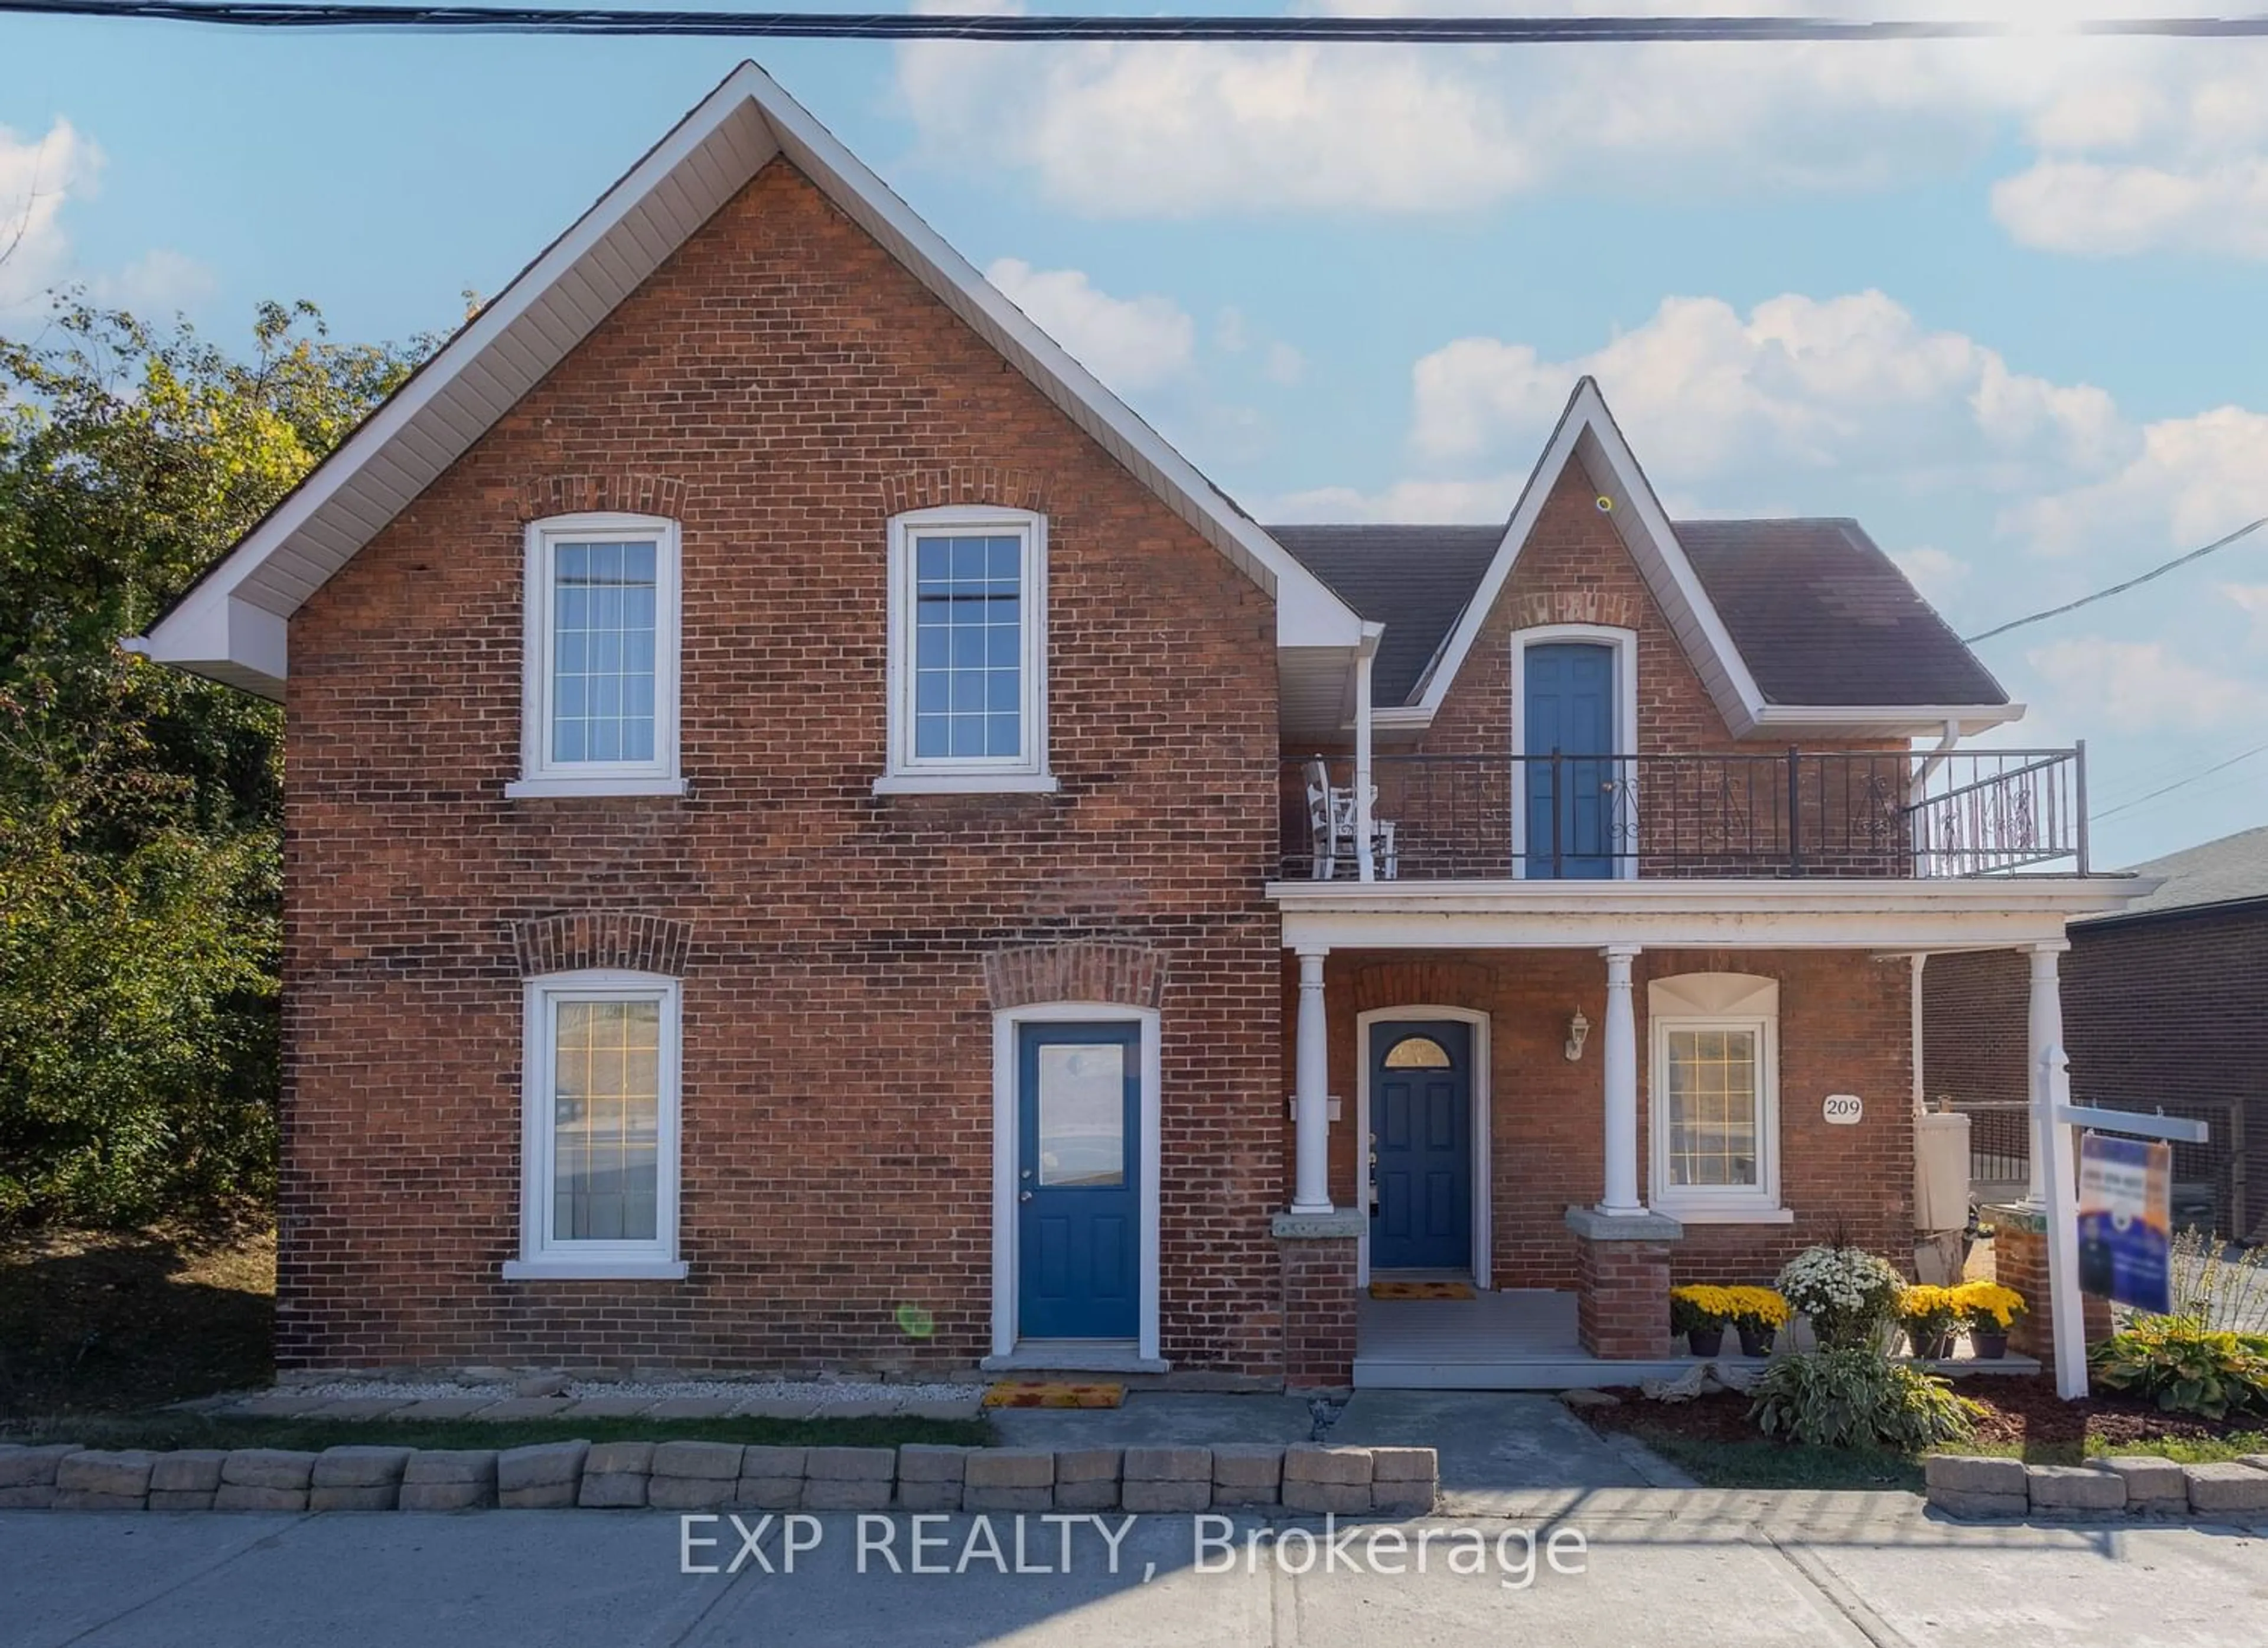 Home with brick exterior material for 209 Dundas St, Quinte West Ontario K8V 1M1